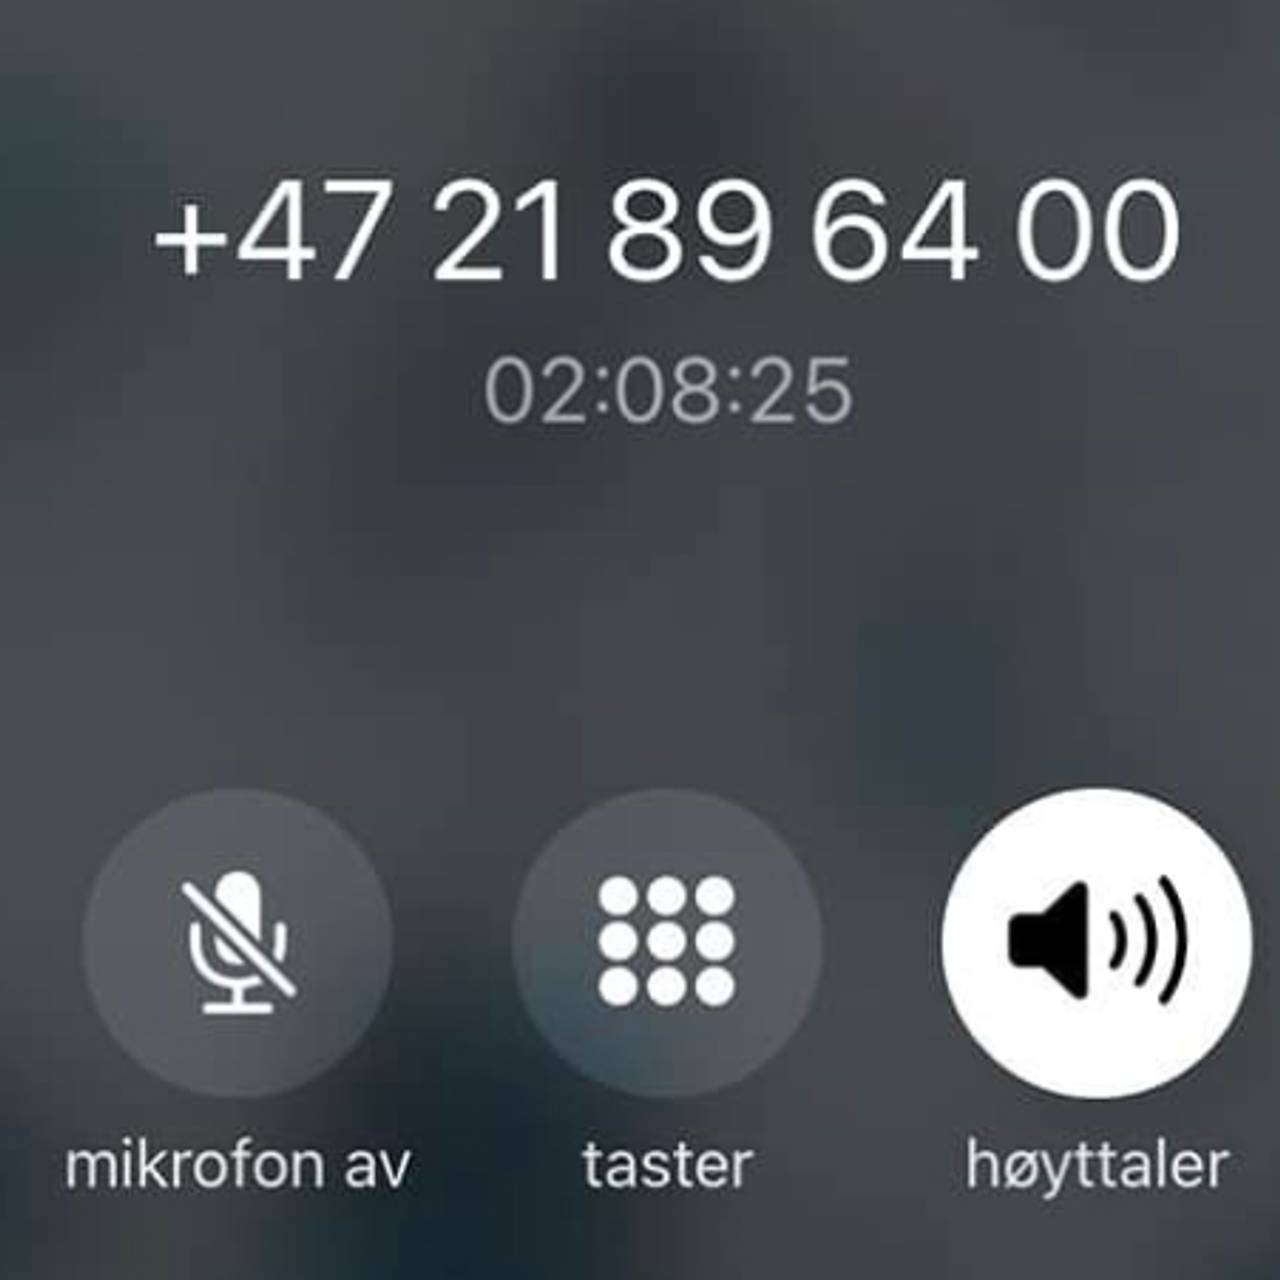 Telefon som viser en norsk person som har prøvd å få kontakt med SAS i over to timer